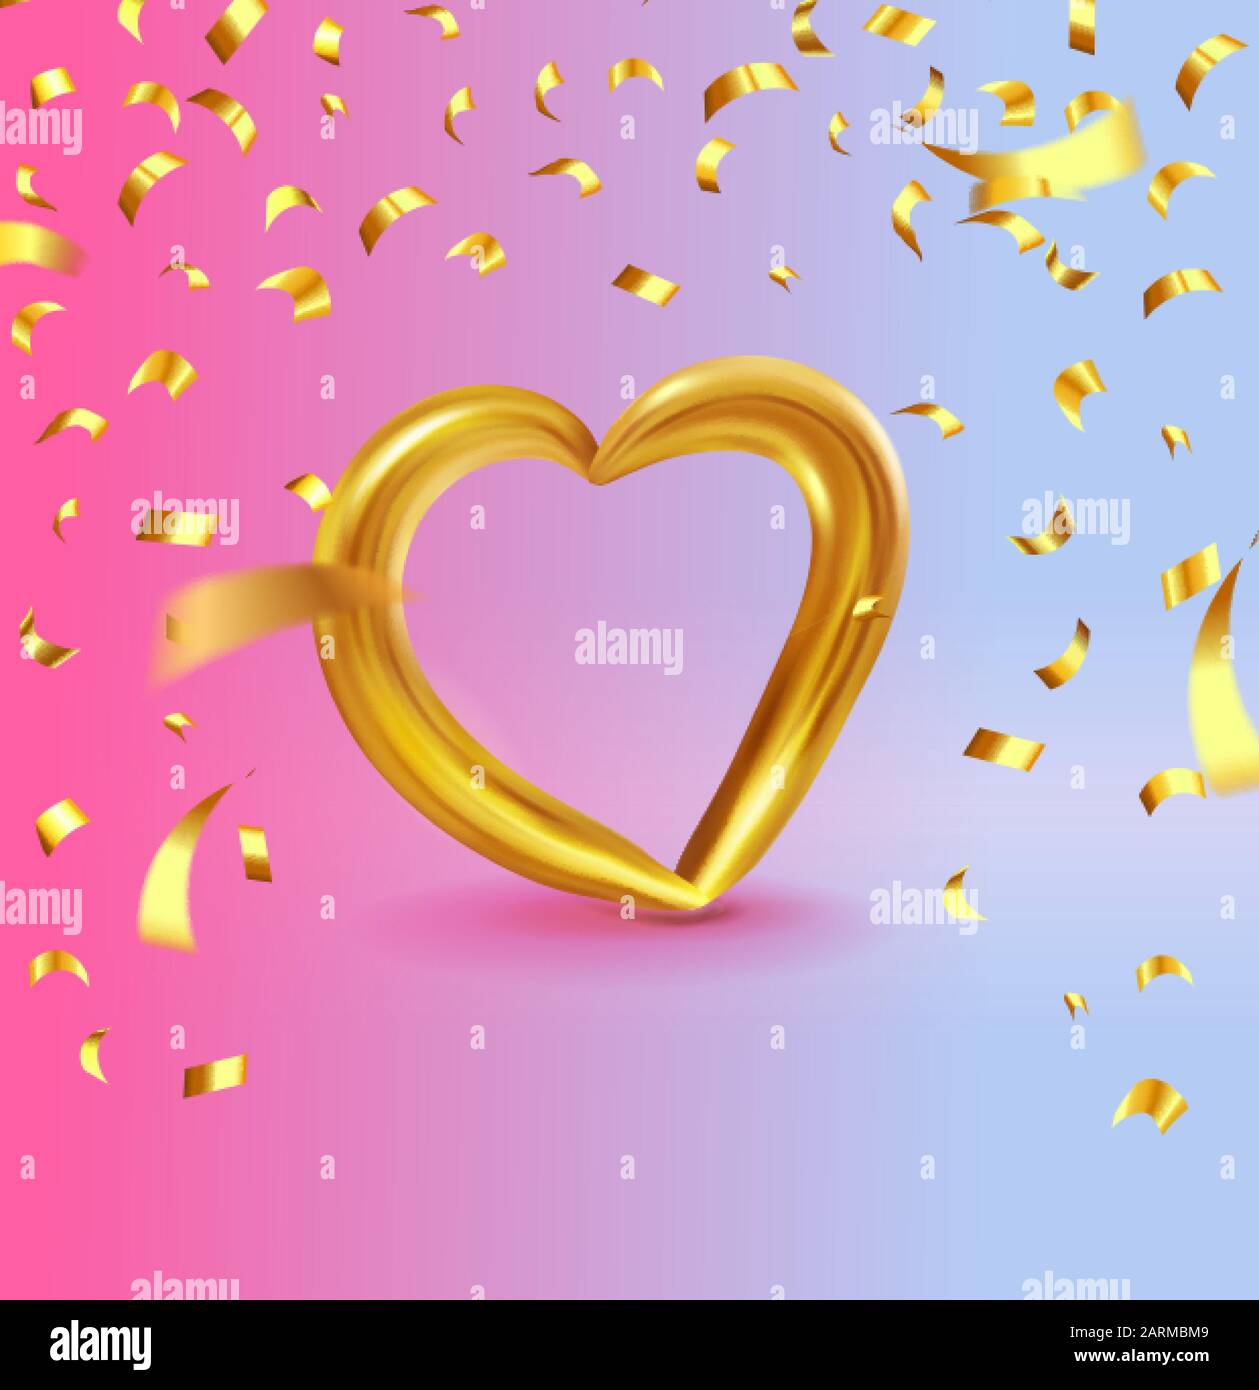 Realistisches Goldmetall-Herz mit herabfallendem goldenem Konfetti. Vektor Valentines Herz auf modernem Farbverlaufshintergrund. Vektordarstellung EPS 10 Stock Vektor